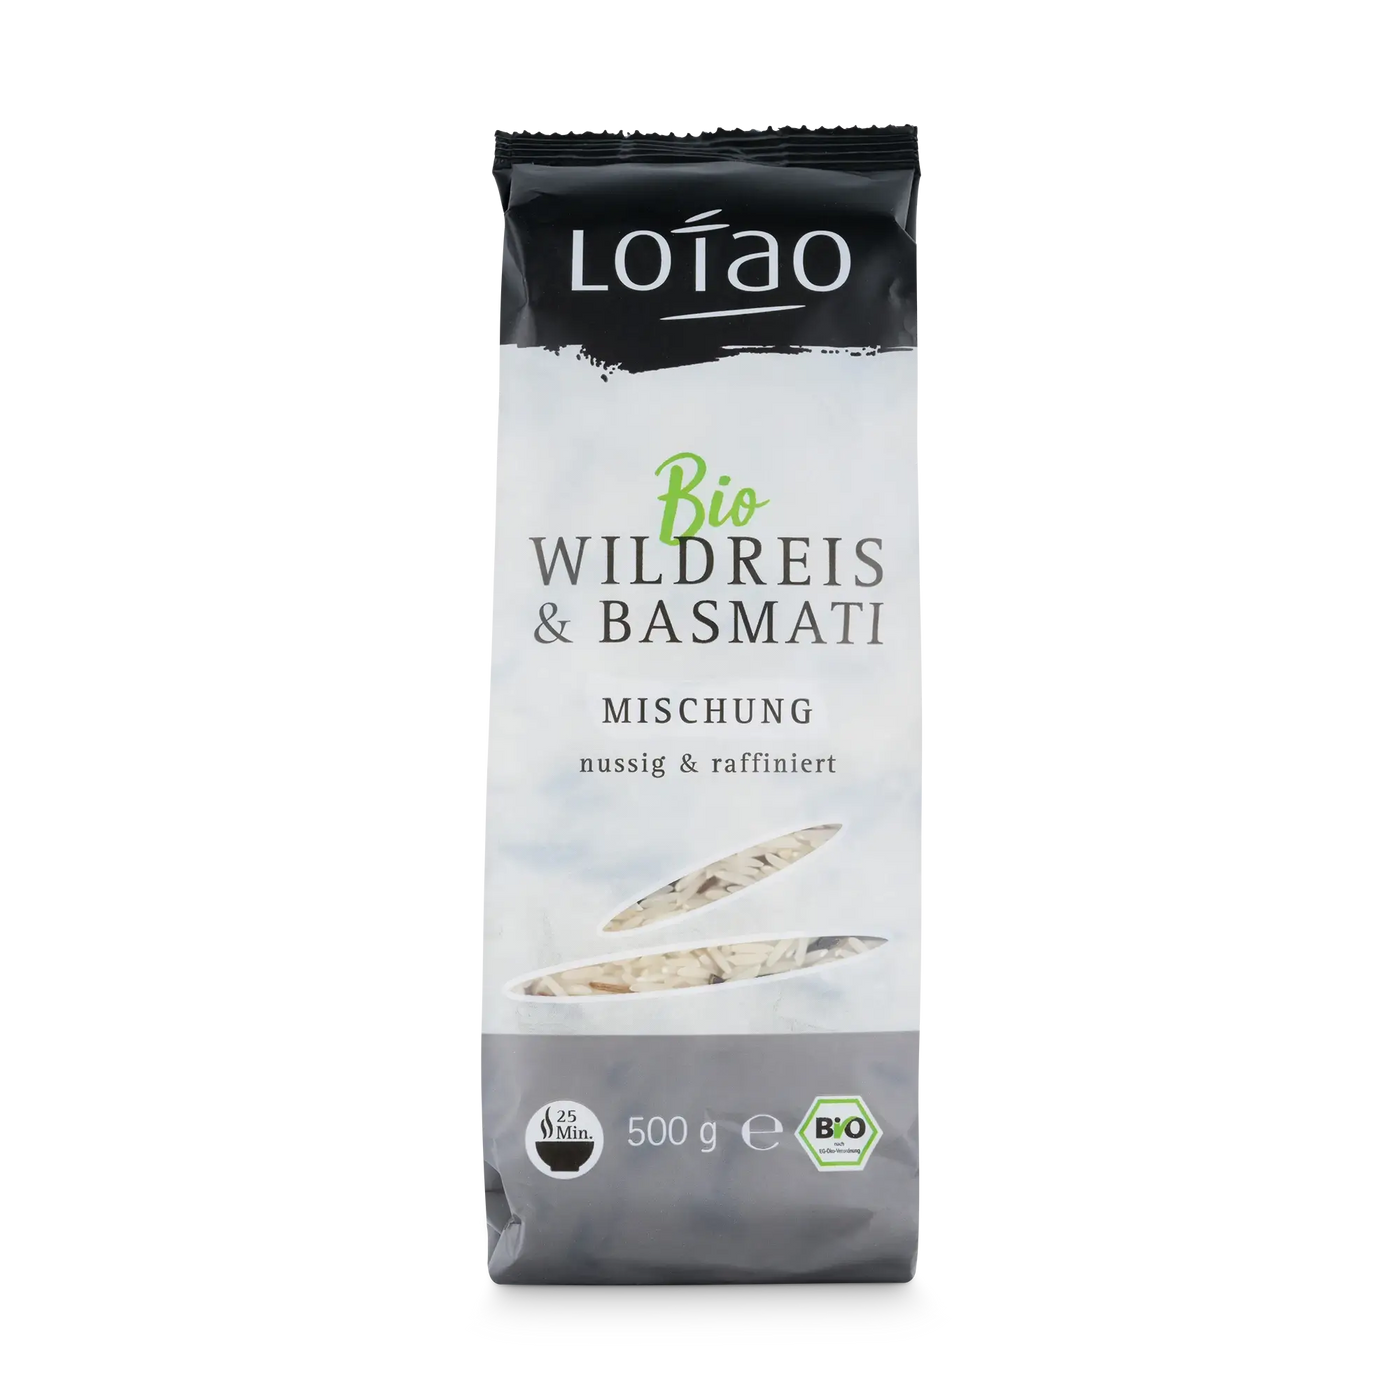 Bio Wildreis Basmati Reis Mischung von Lotao in der 500g Packung